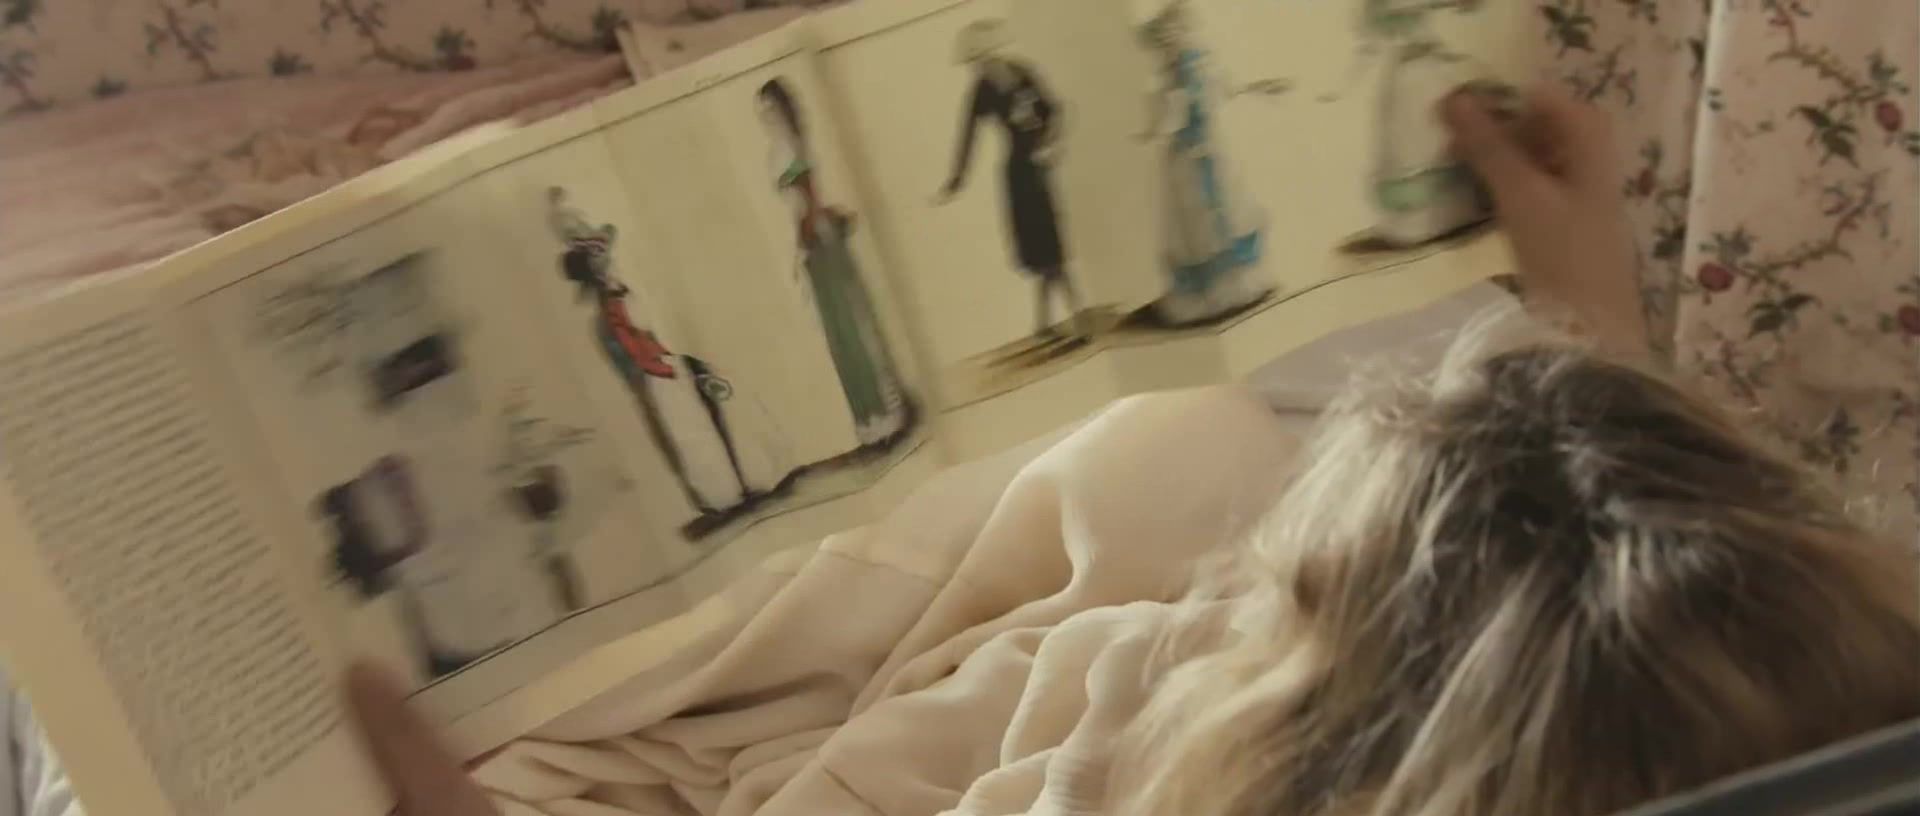 Fat Virginie Ledoyen - Farewell My Queen (2012) Shower - 1